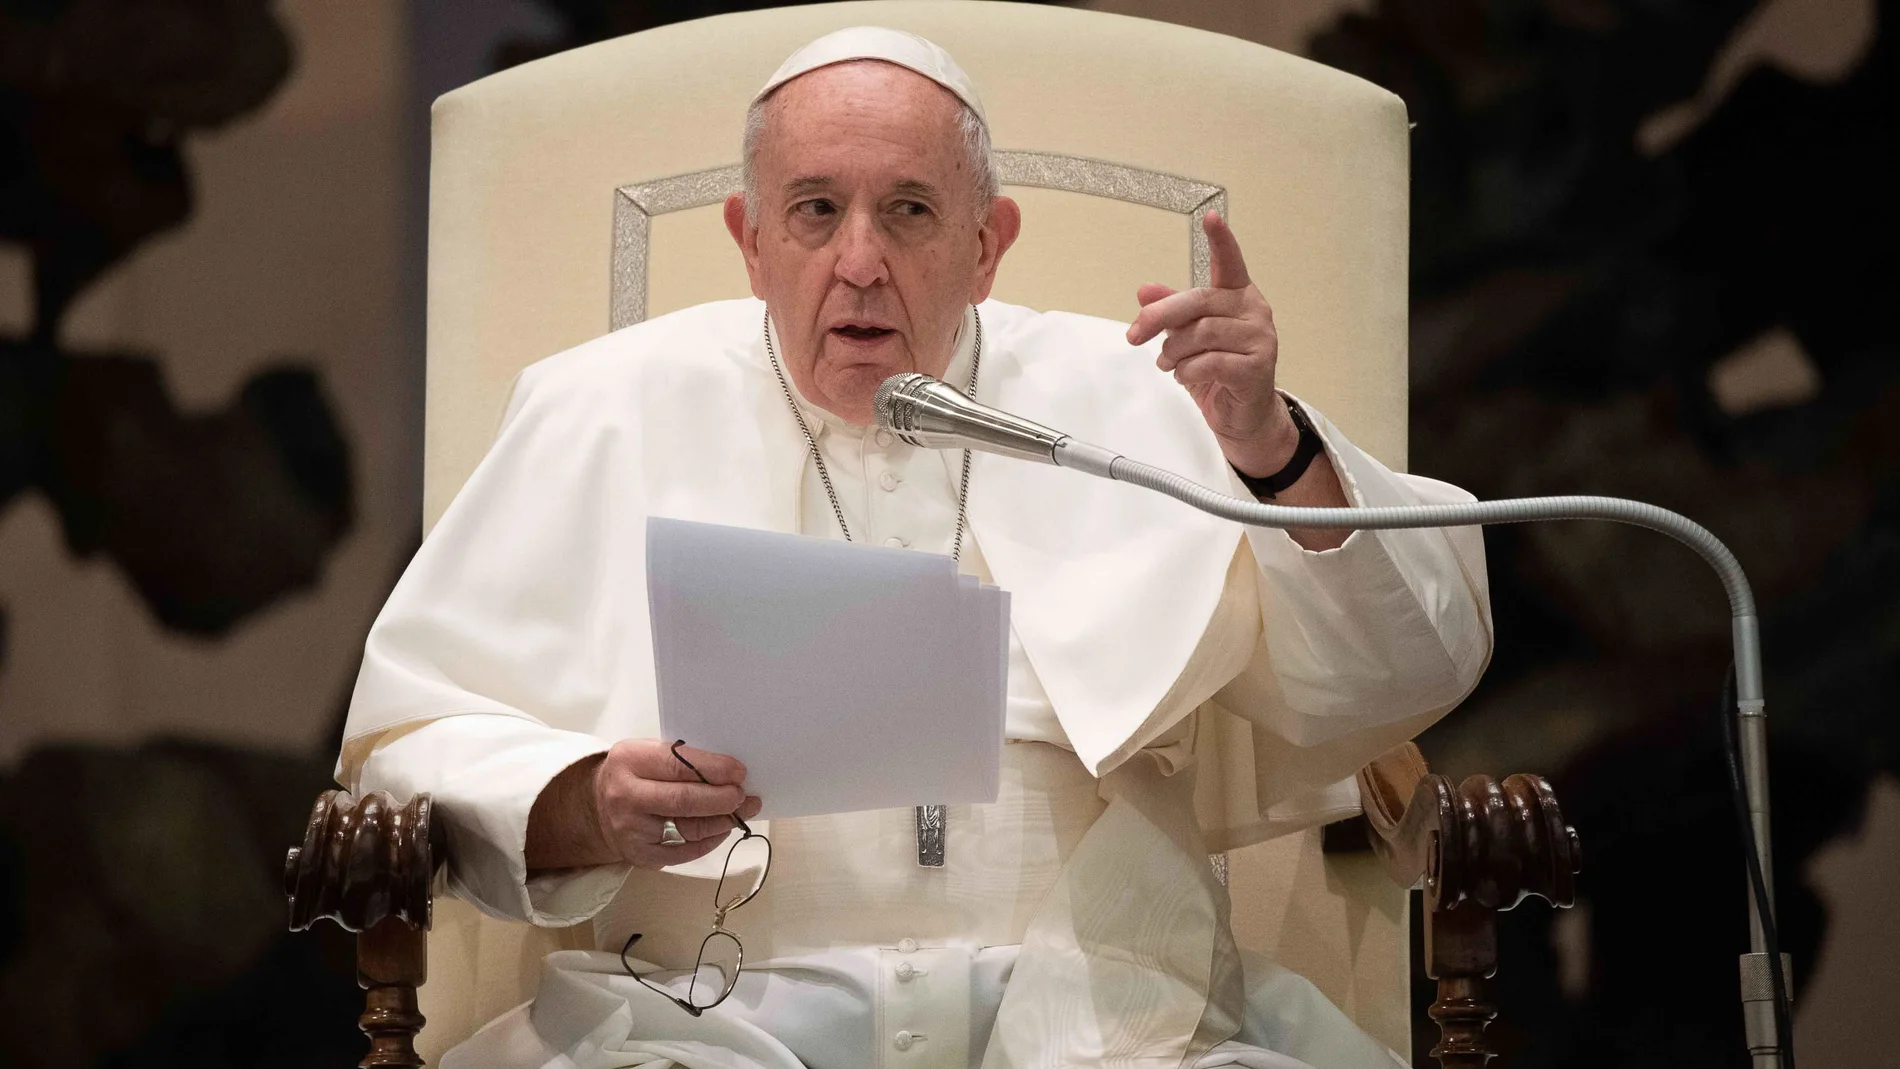 “Lo que tenemos que hacer es una ley de convivencia civil. Tienen derecho a estar cubiertos legalmente”, expone el Papa